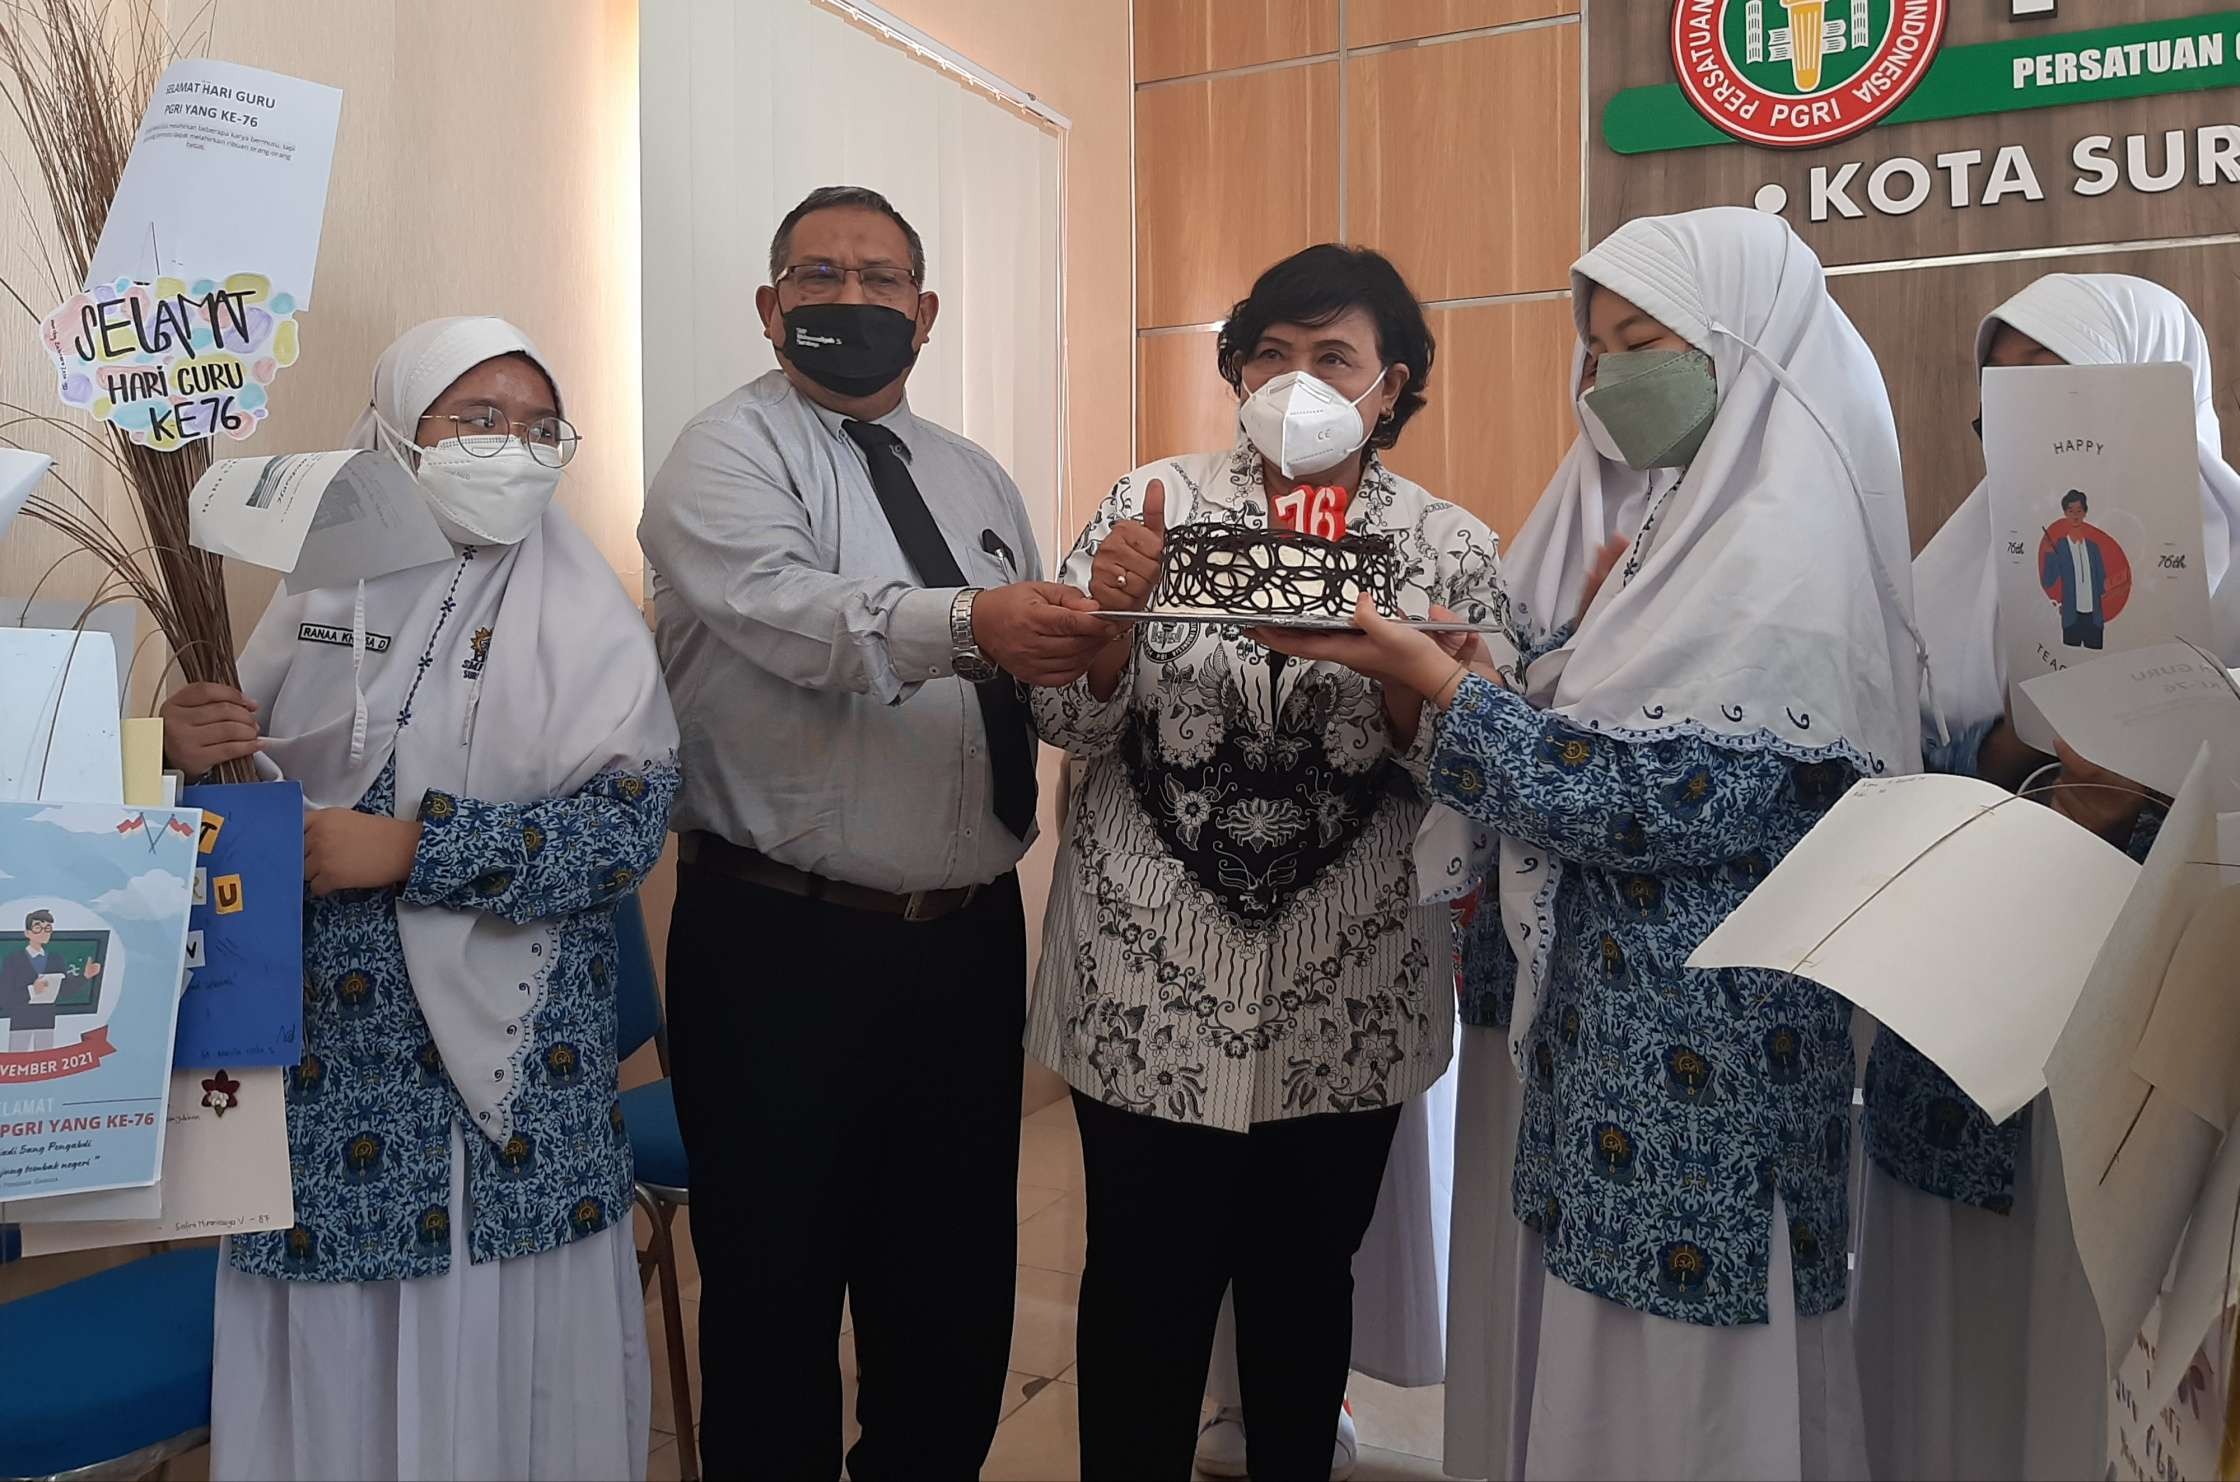 Ketua PGRI Surabaya, Agnes Warsiati saat menerima kue dari siswa SMP Muhammadiyah 5 Surabaya sebagai simbol perayaan HUT ke-76 PGRI. (Foto: Pita Sari/Ngopibareng.id)